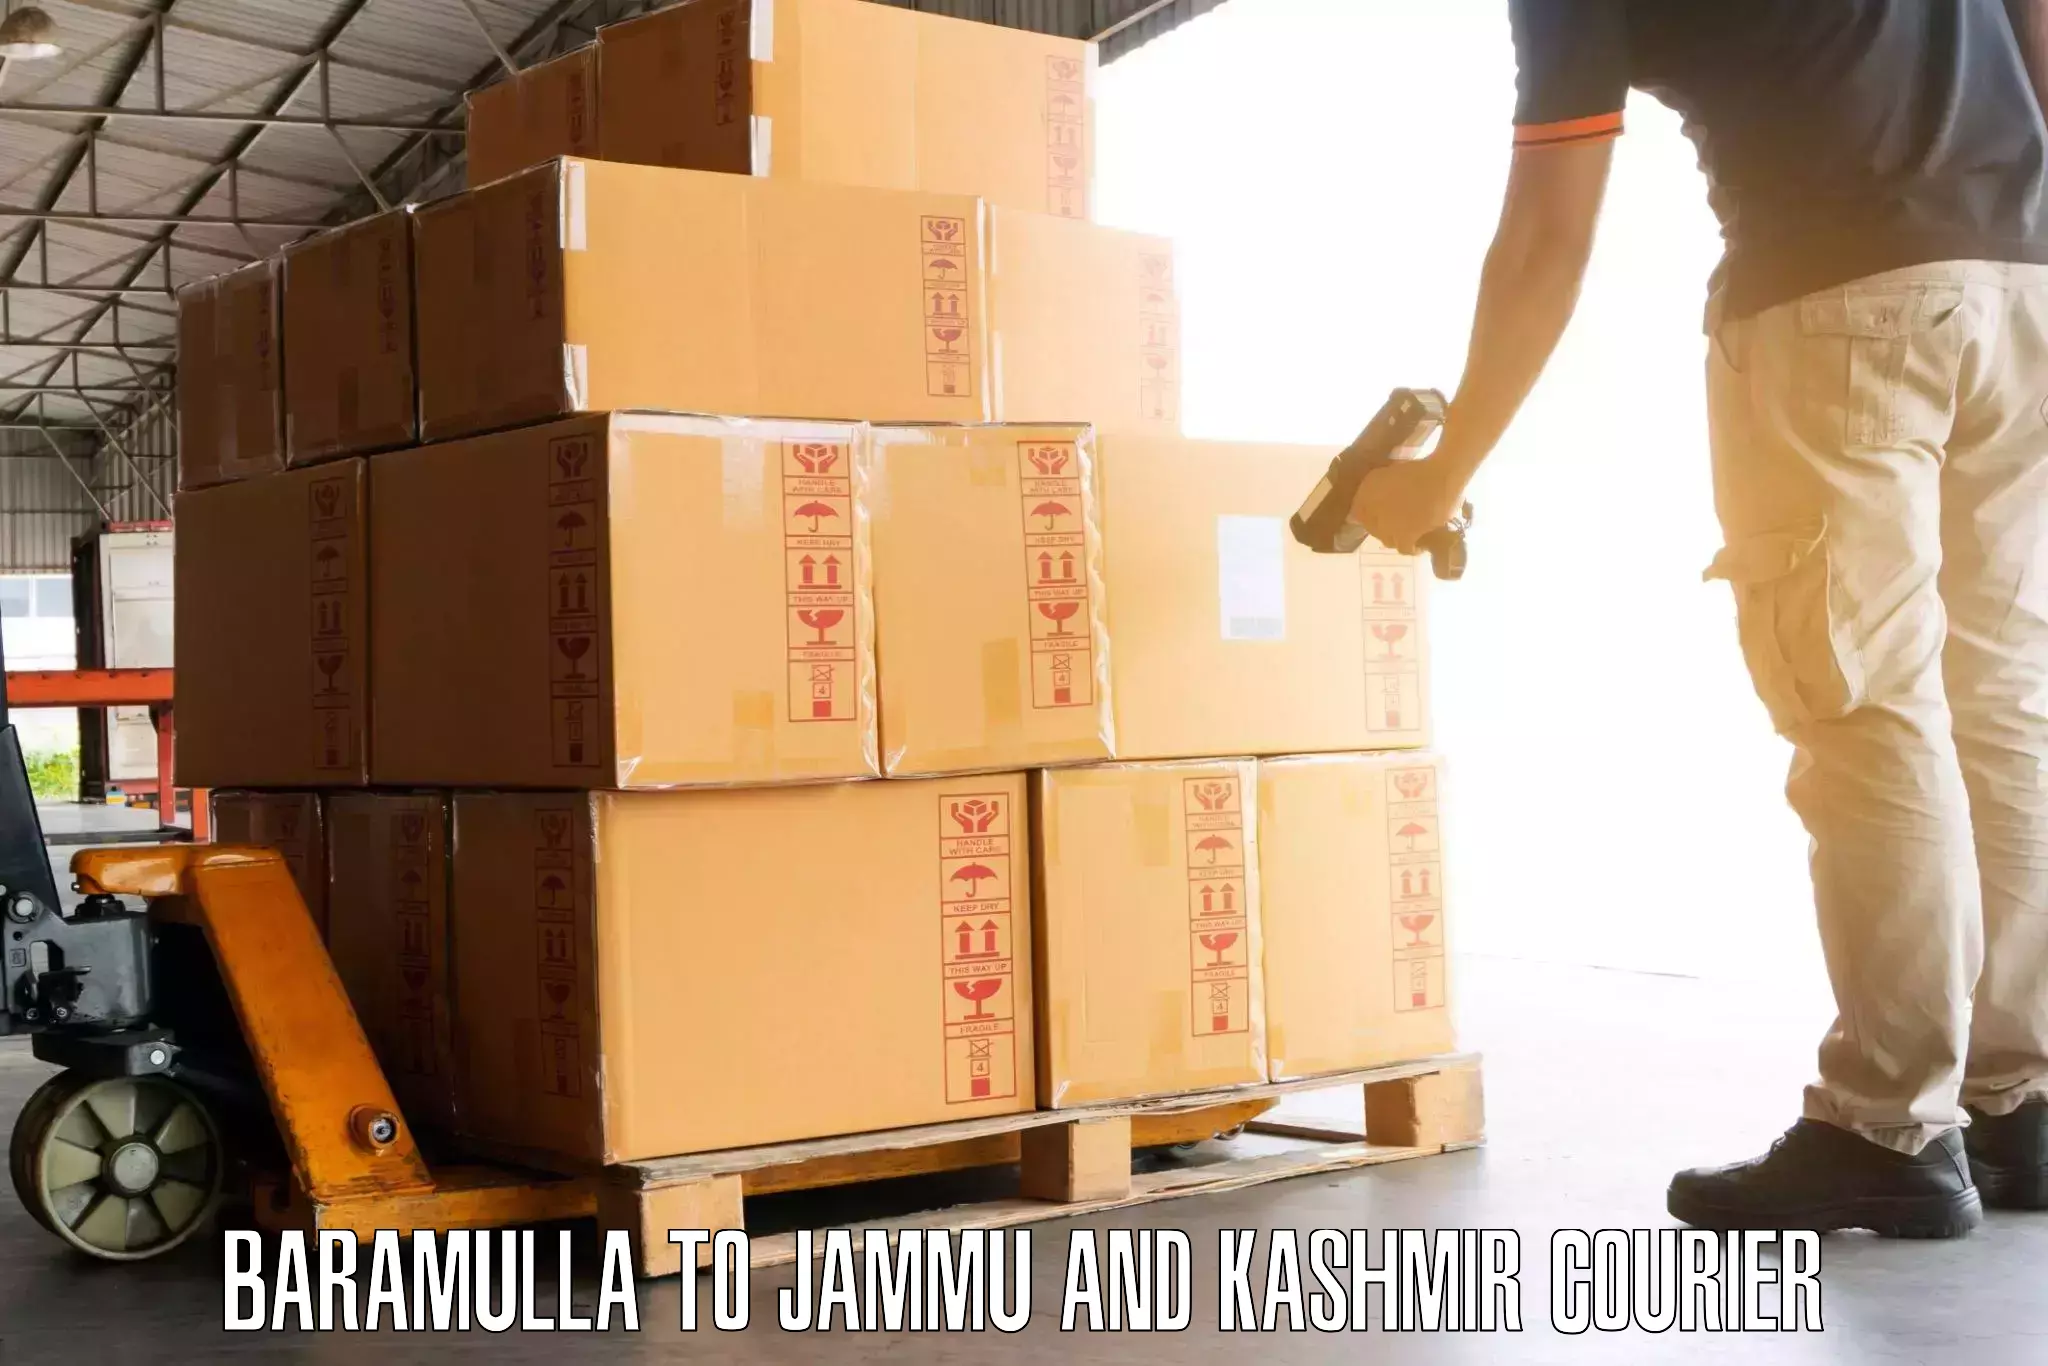 Baggage shipping experts Baramulla to Baramulla